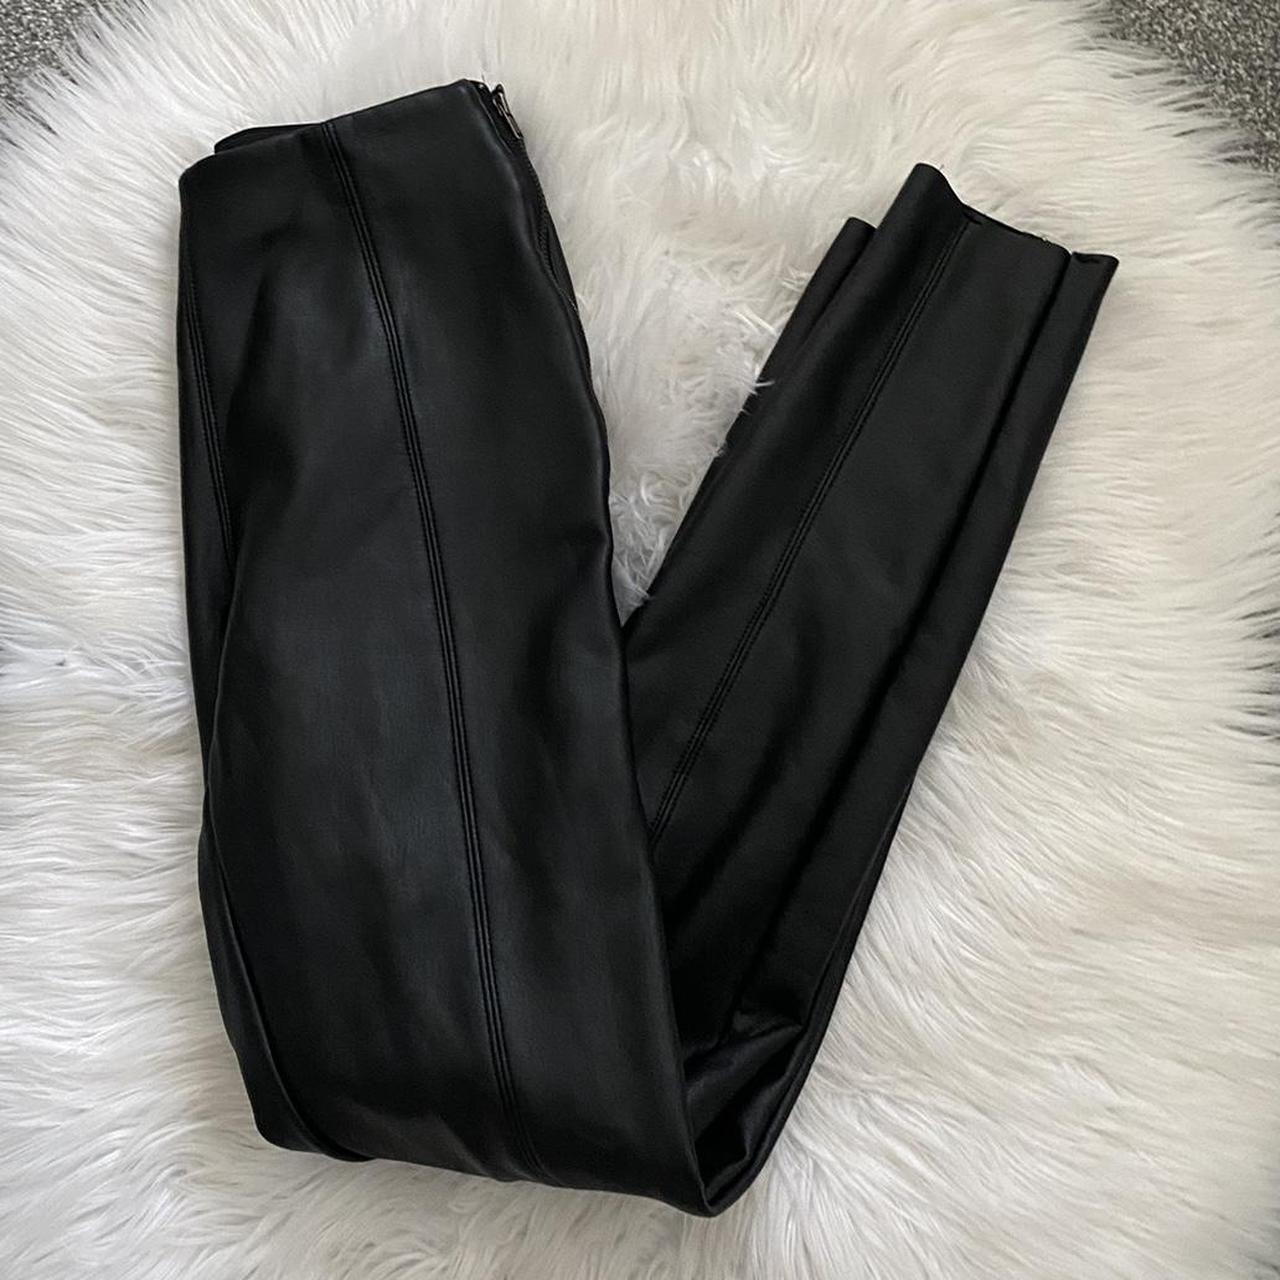 topshop faux leather leggings size 6